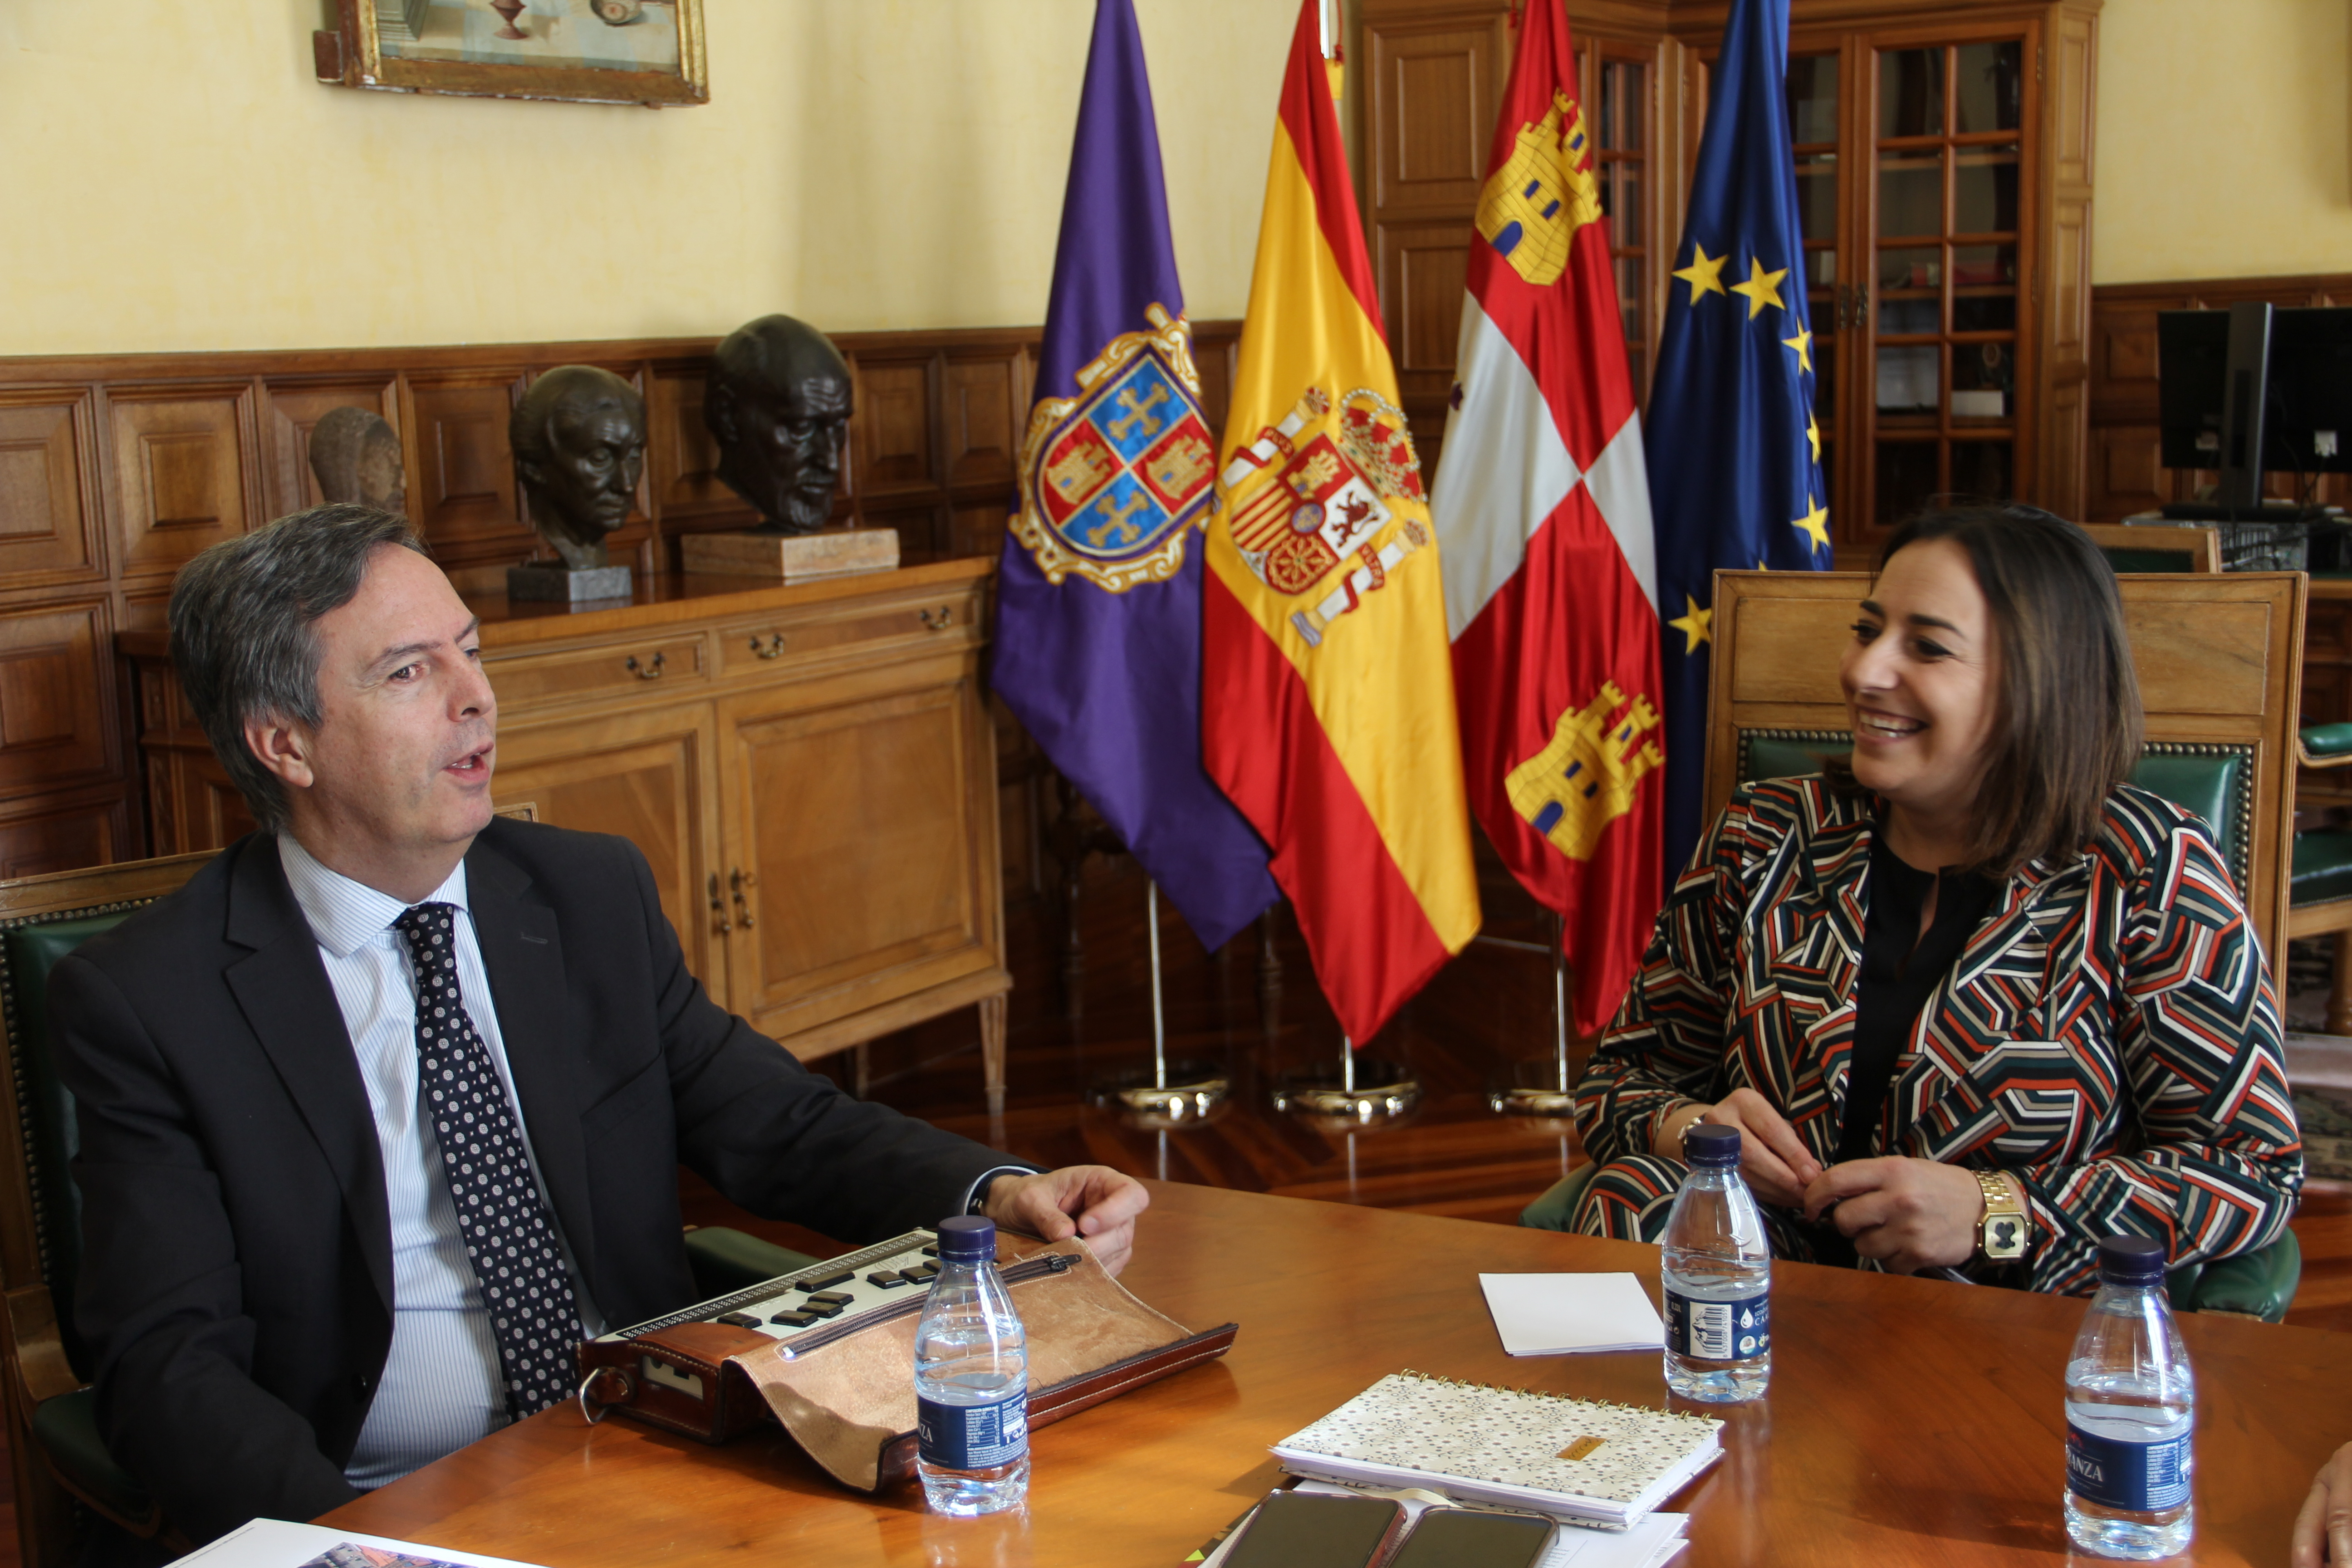 La alcaldesa de Palencia, Miriam Andrés, ha mantenido esta mañana un encuentro de trabajo con el director general de Deportes de la Junta de Castilla y León, Enrique Sánchez Guijo, para seguir avanzando en la cesión de la instalación.